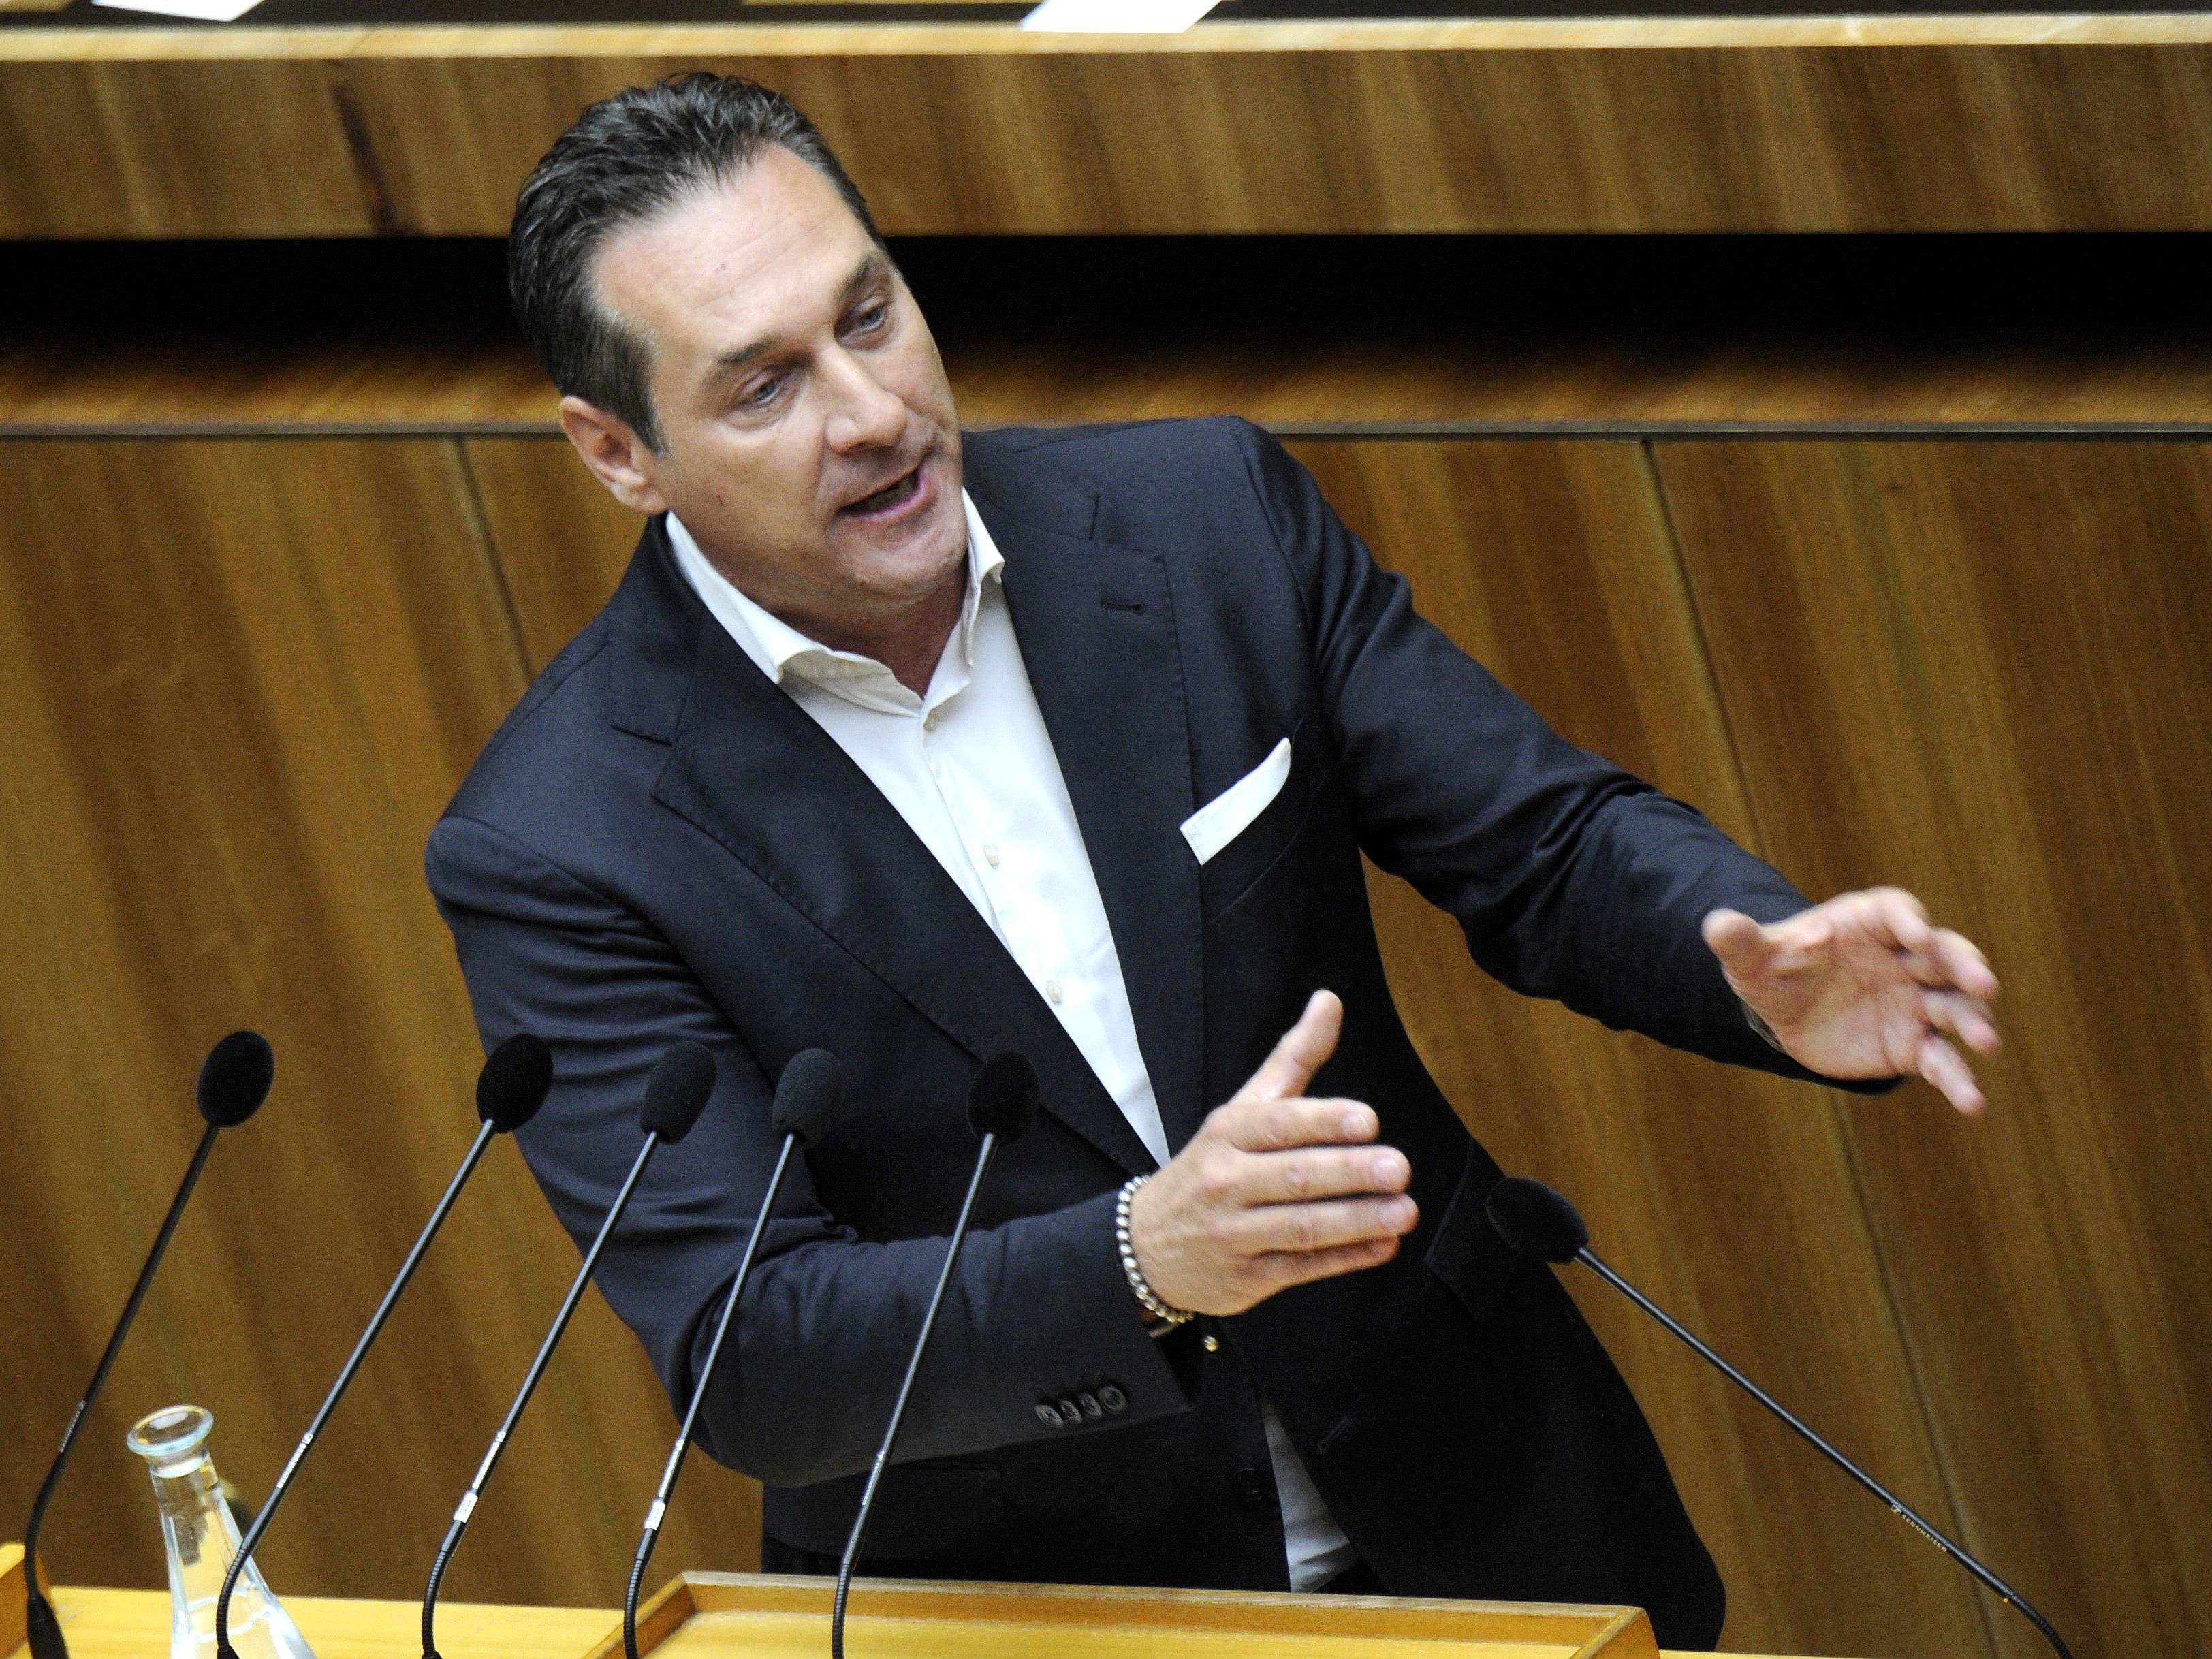 FPÖ-Chef Heinz Christian Strache meldete sich in der Causa zu Wort